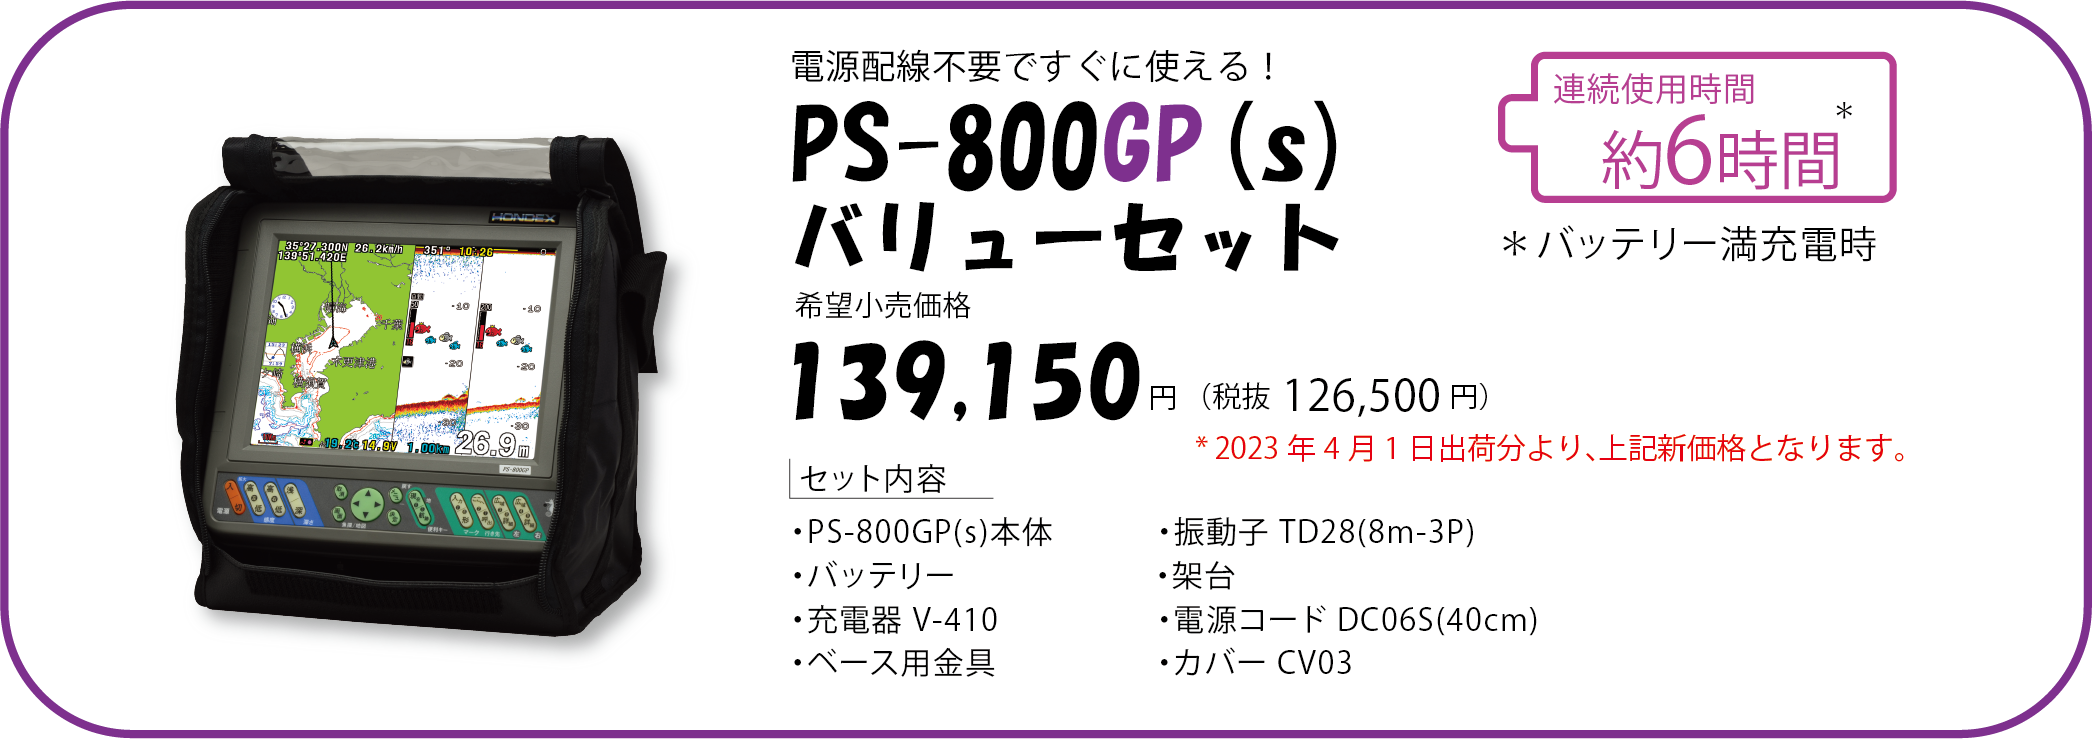 PS-800GP(s)バリューセット